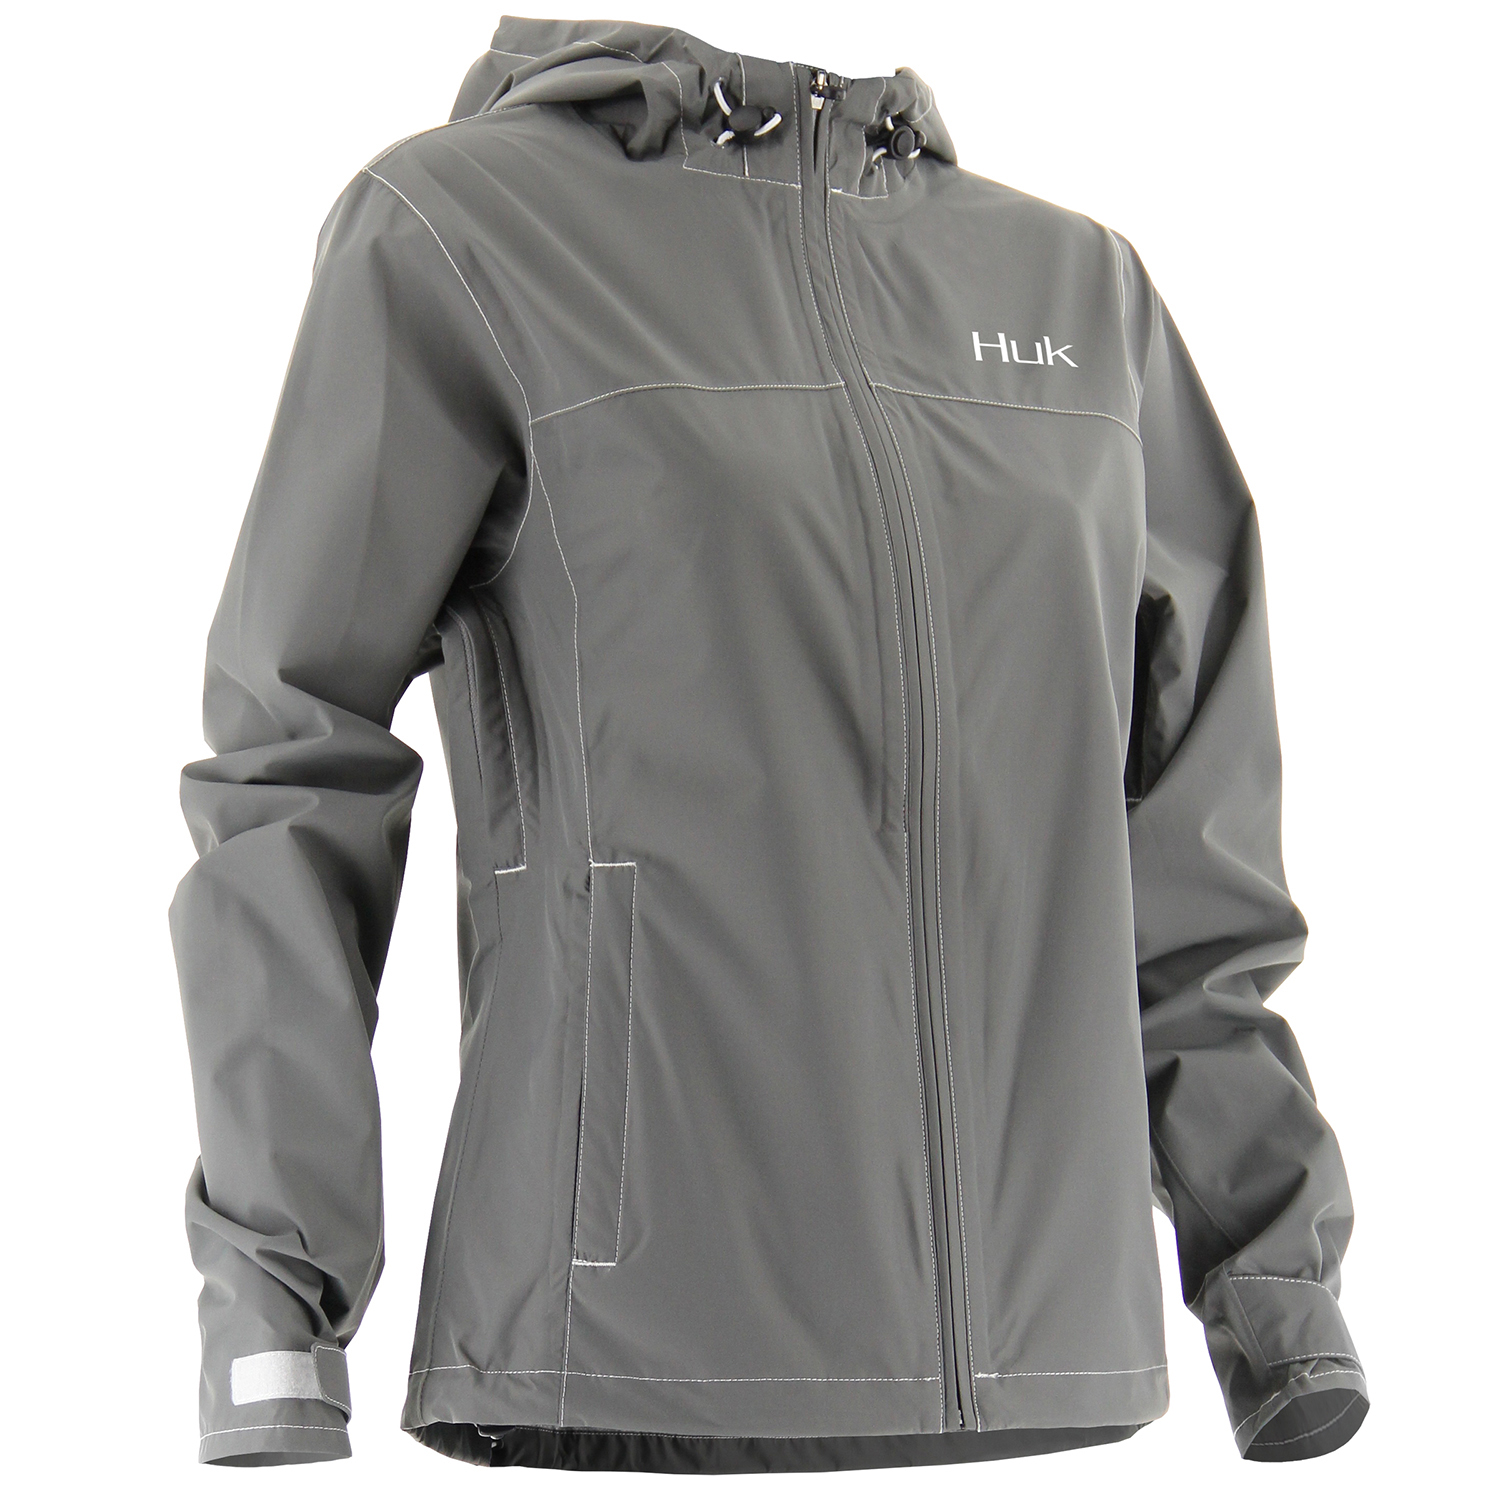 Huk Women's Packable Rain Jacket